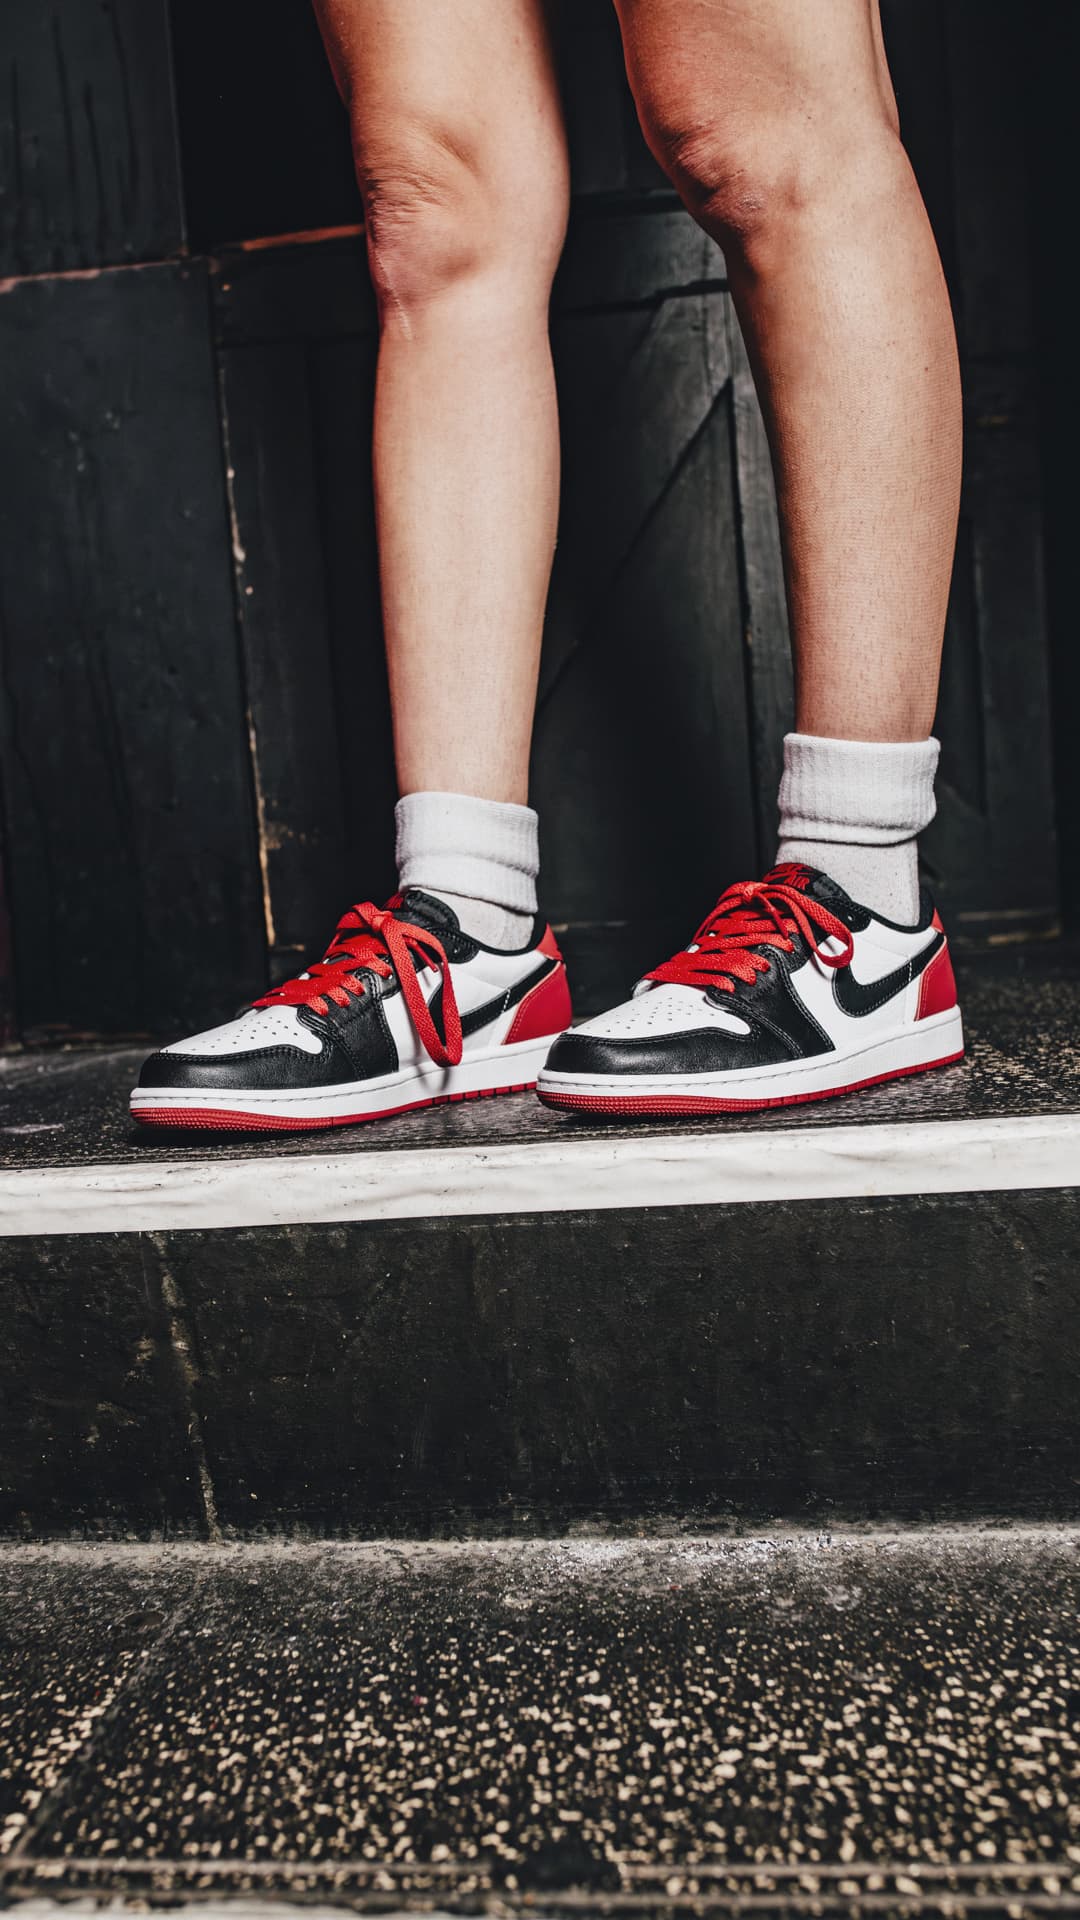 Nike Air Jordan 1 Retro Low OG Black Toeメンズ